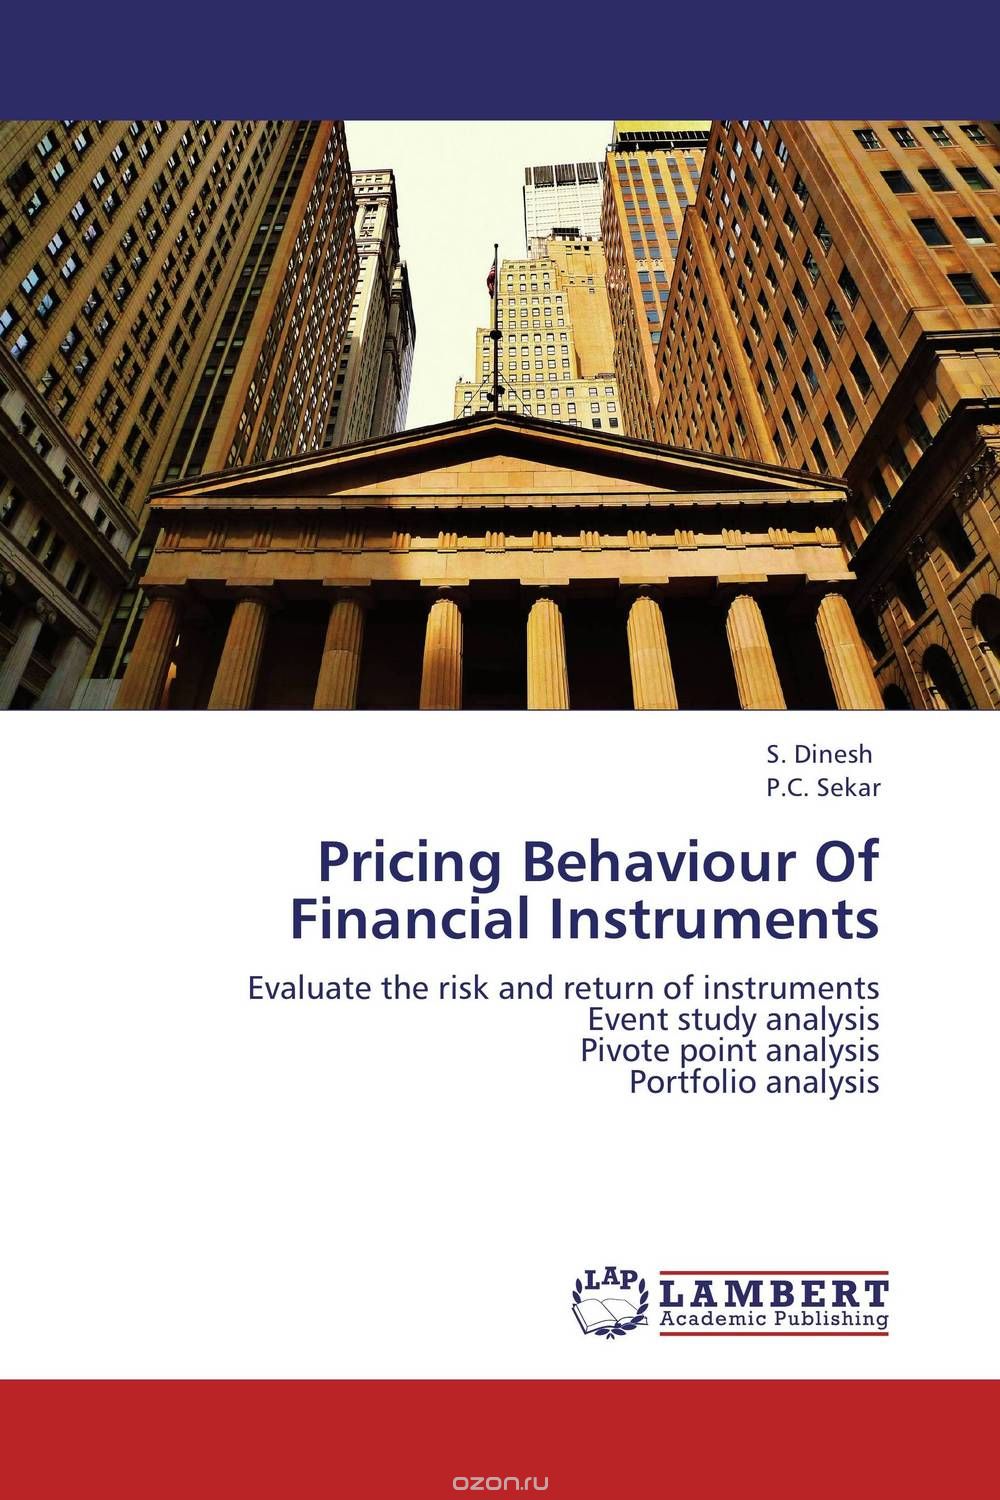 Скачать книгу "Pricing Behaviour Of Financial Instruments"